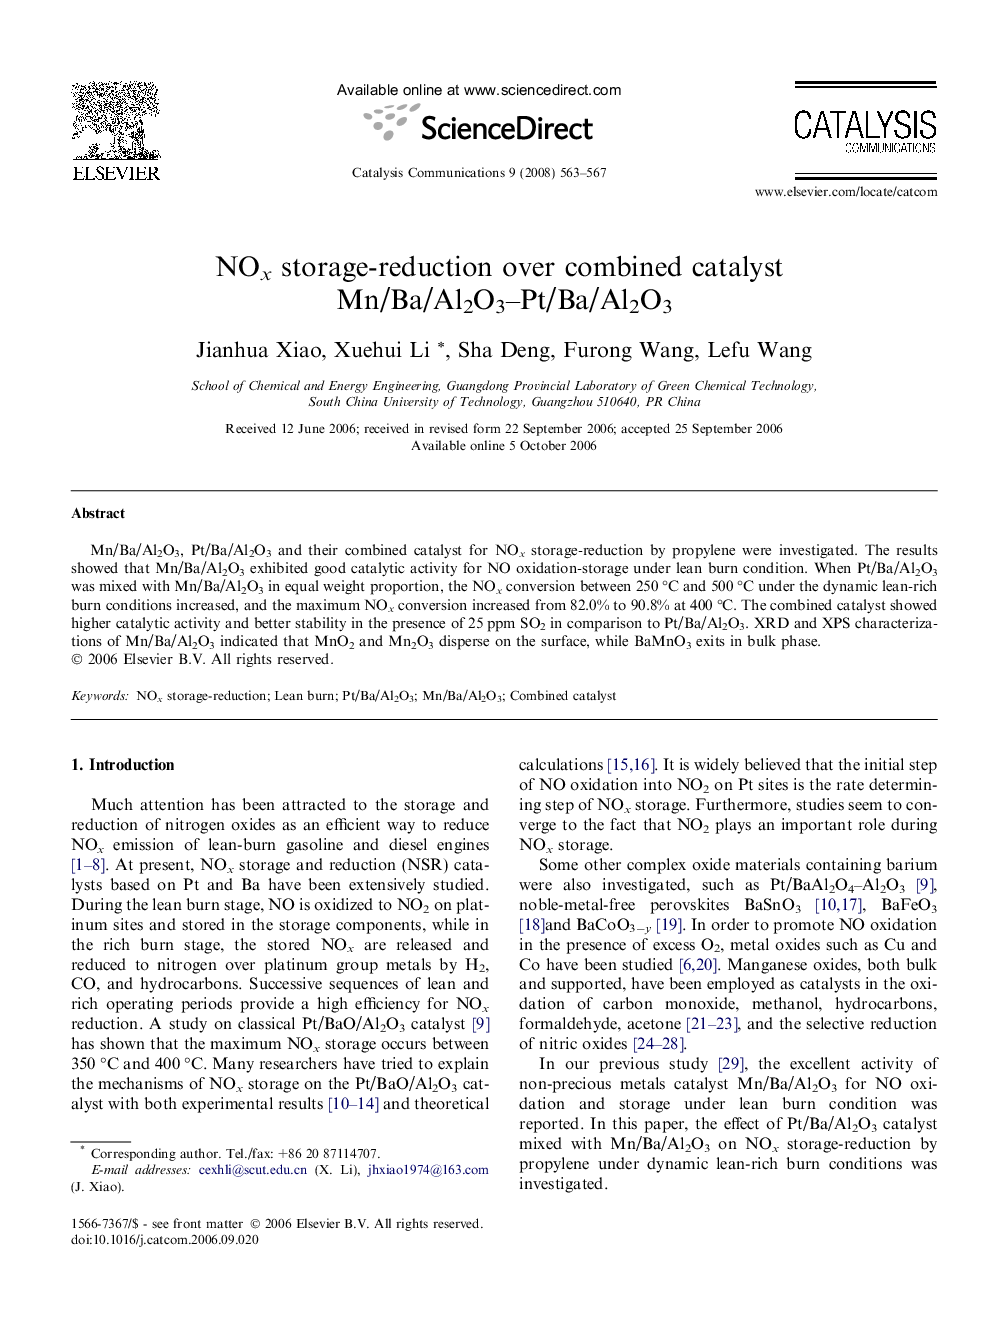 NOx storage-reduction over combined catalyst Mn/Ba/Al2O3–Pt/Ba/Al2O3